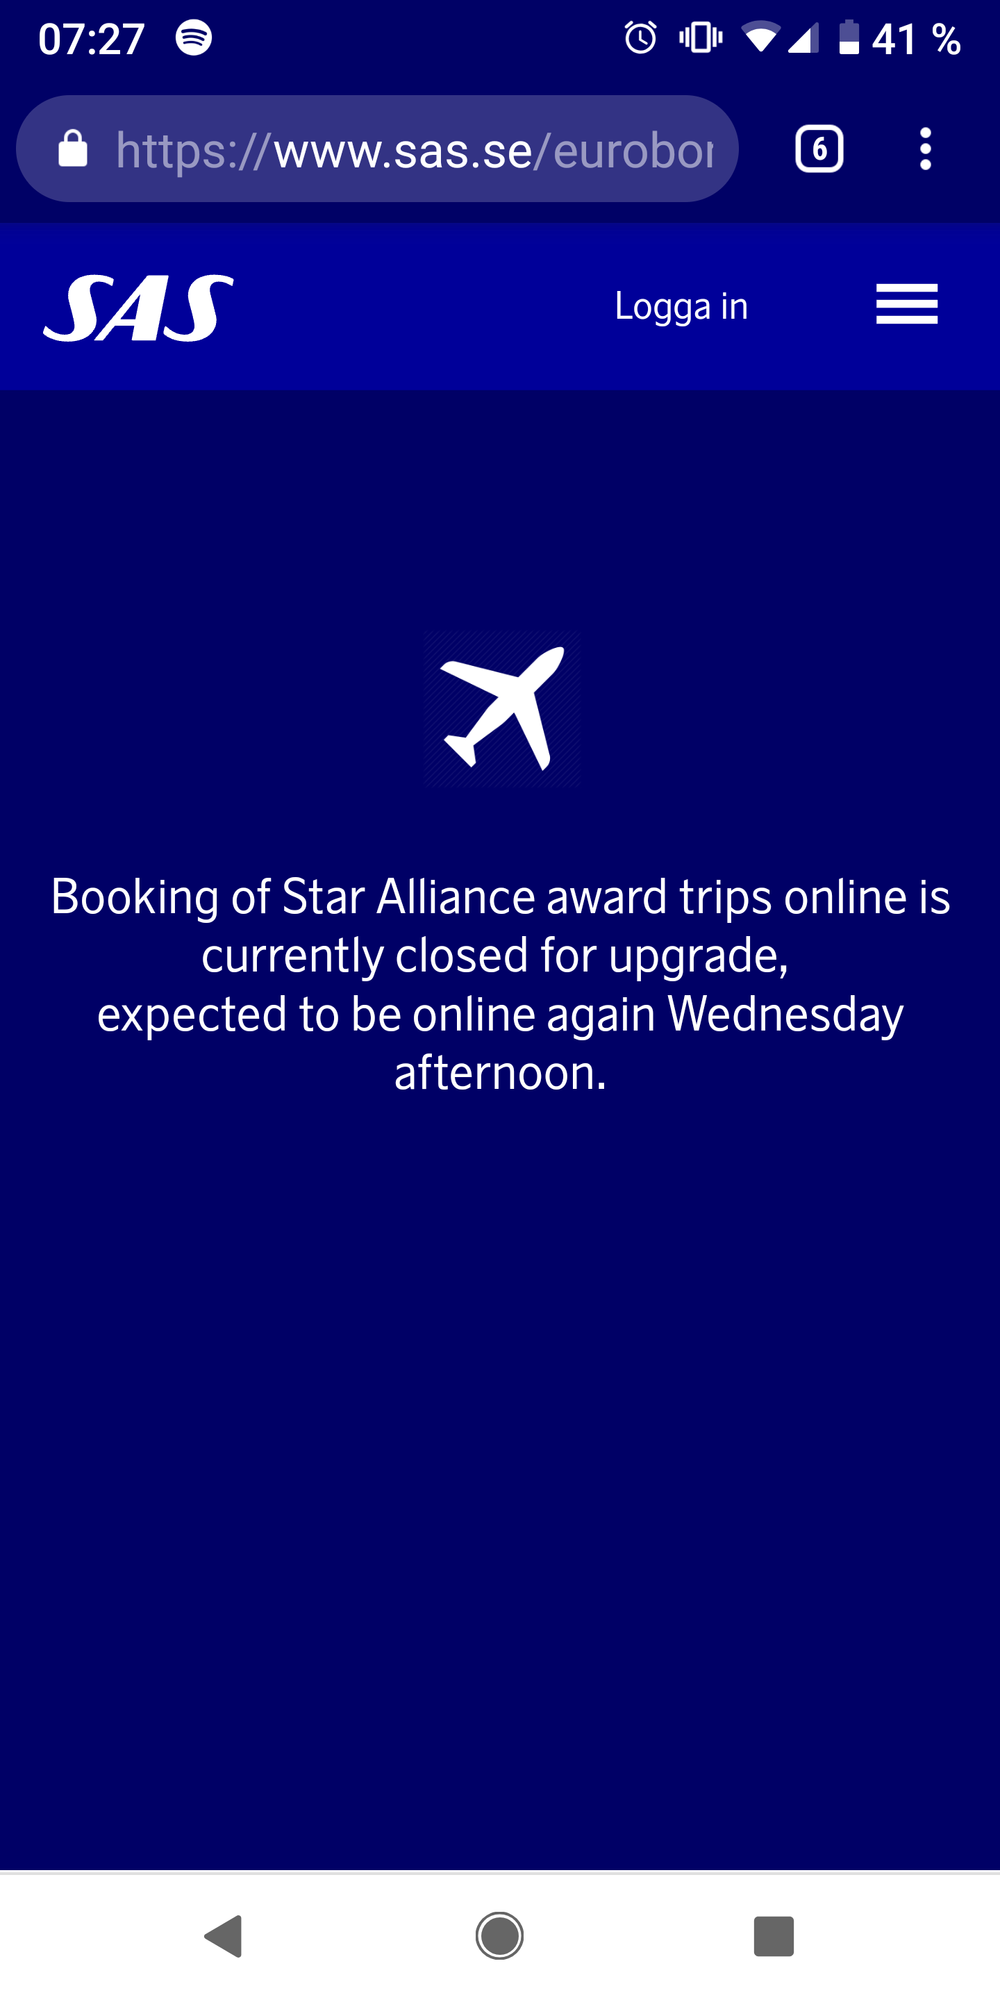 Star Alliance Award Chart Sas